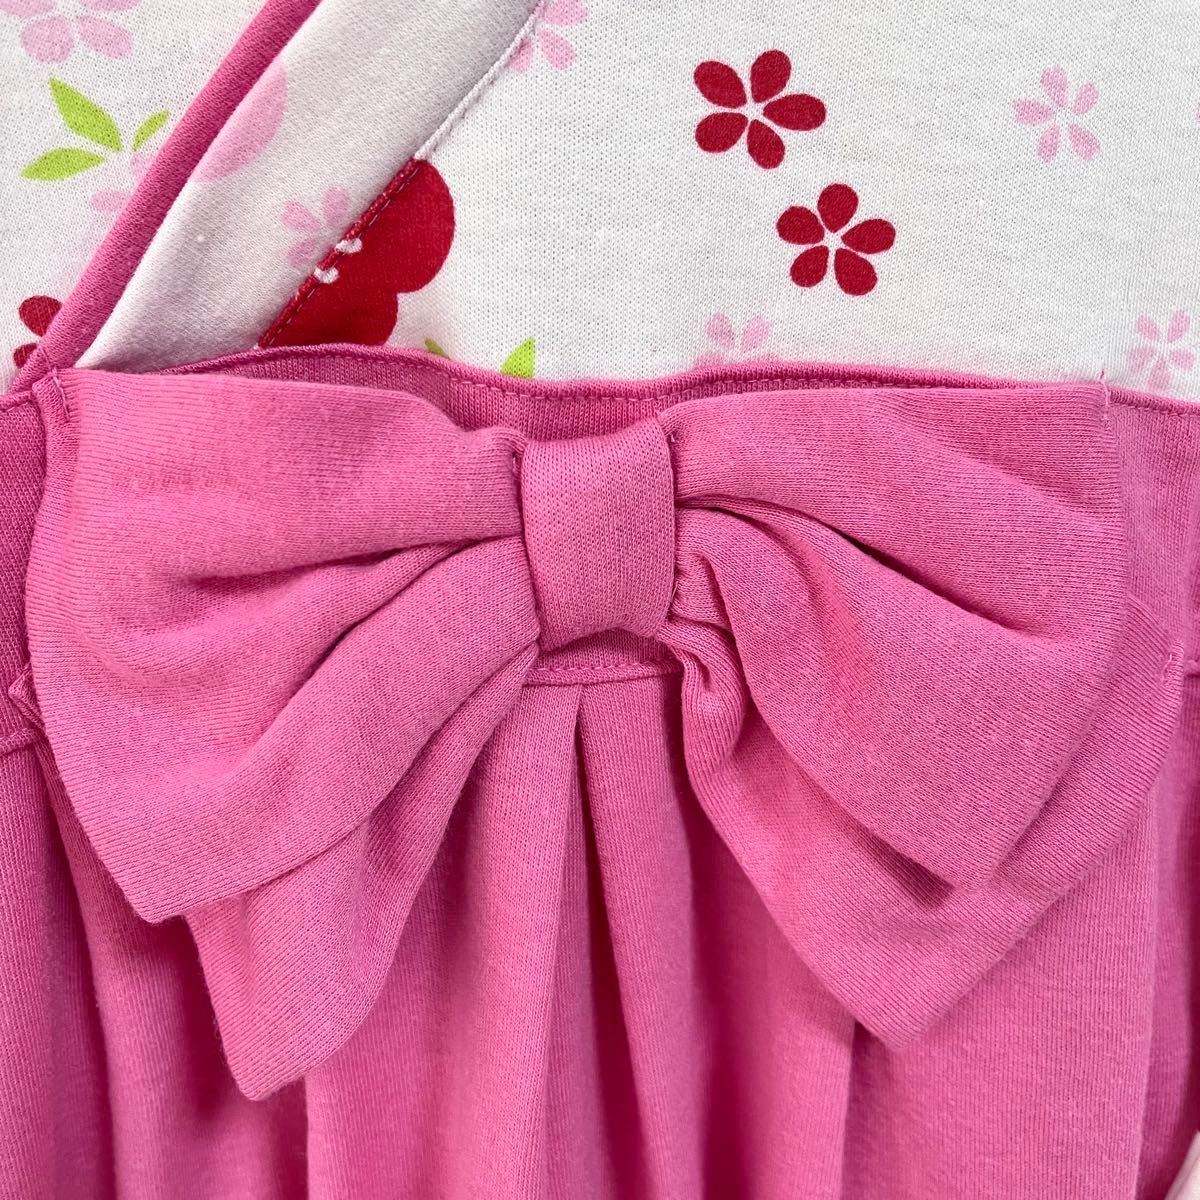 90 ベビー 女の子 袴ロンパース はかま ロンパース 着物 ひな祭り 節句 お誕生日 お食い初め セレモニー 衣装 ピンク